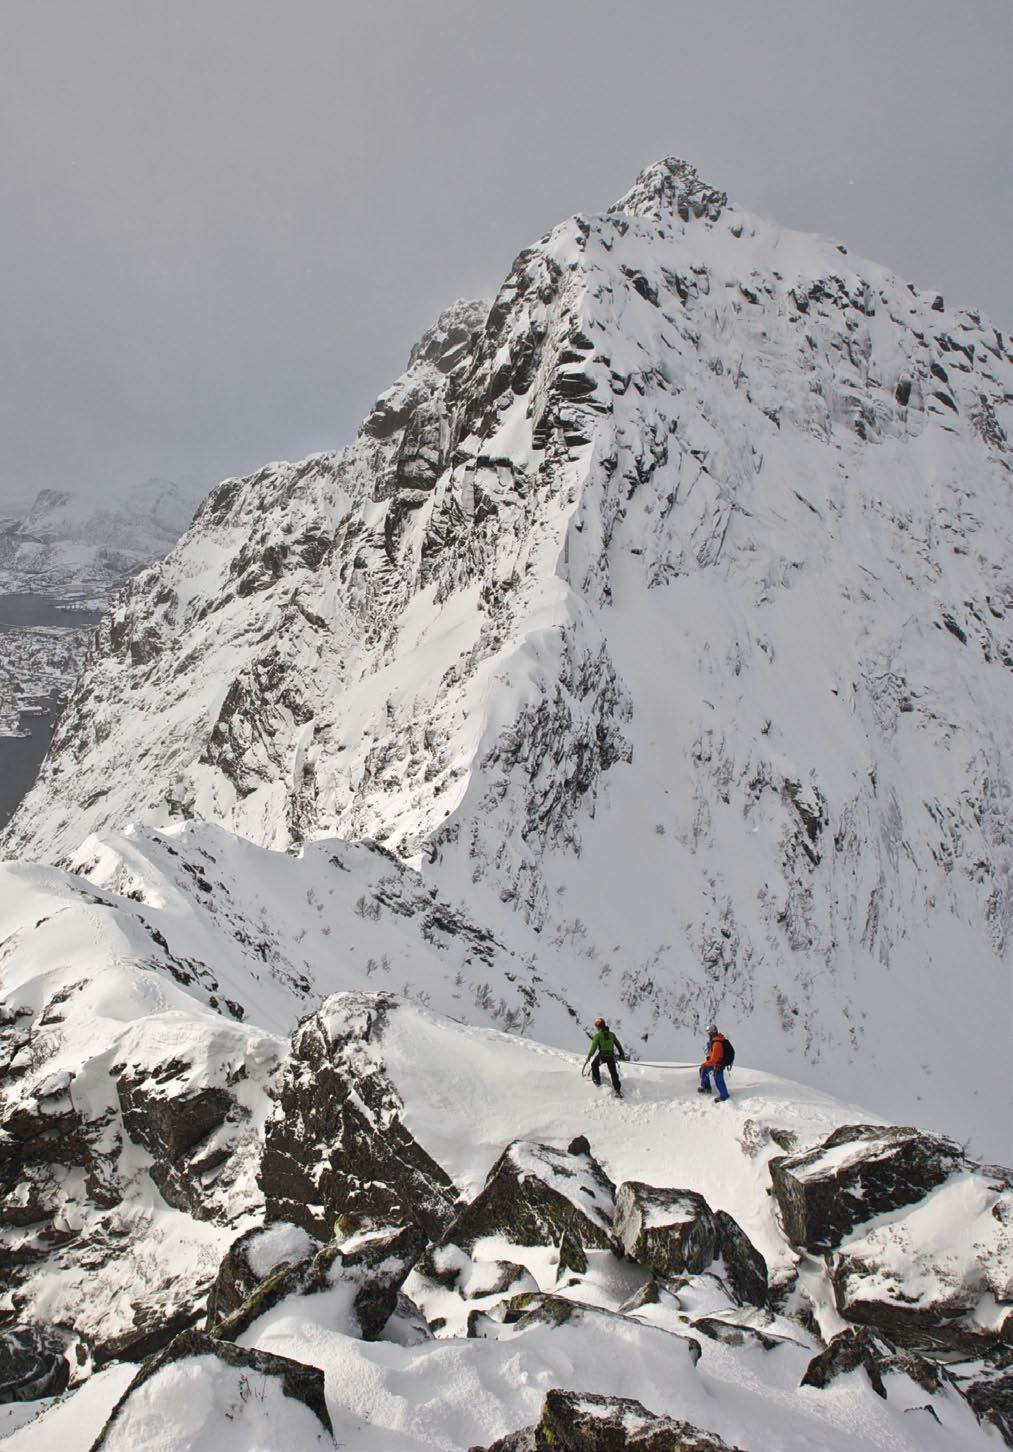 Túl az északi sarkkörön, valahol a 67. és a 68. szélességi fok között található a norvég Lofoten szigetcsoport (nevének jelentése Hiúzmancs ), mely a téli hegymászás alig ismert paradicsoma.